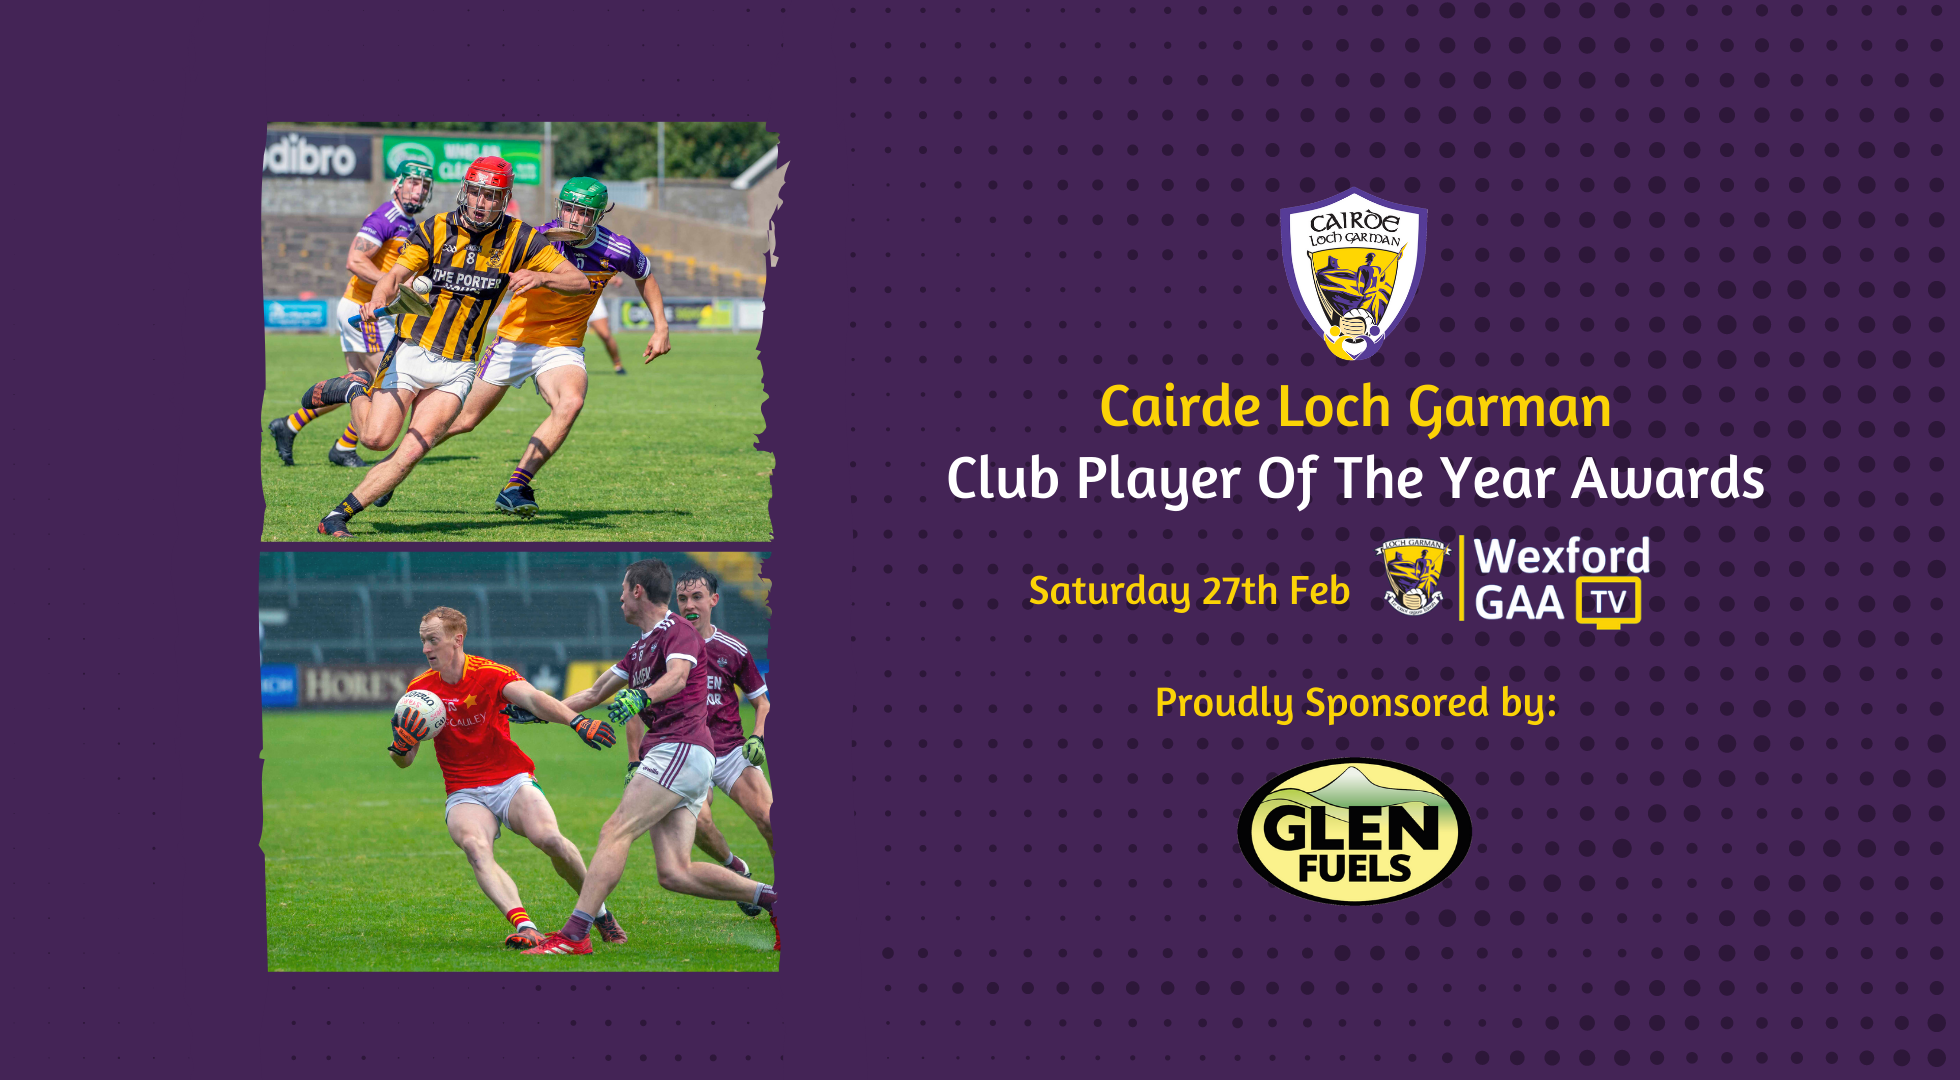 Cairde Loch Garman Club Player Of The Year Awards.